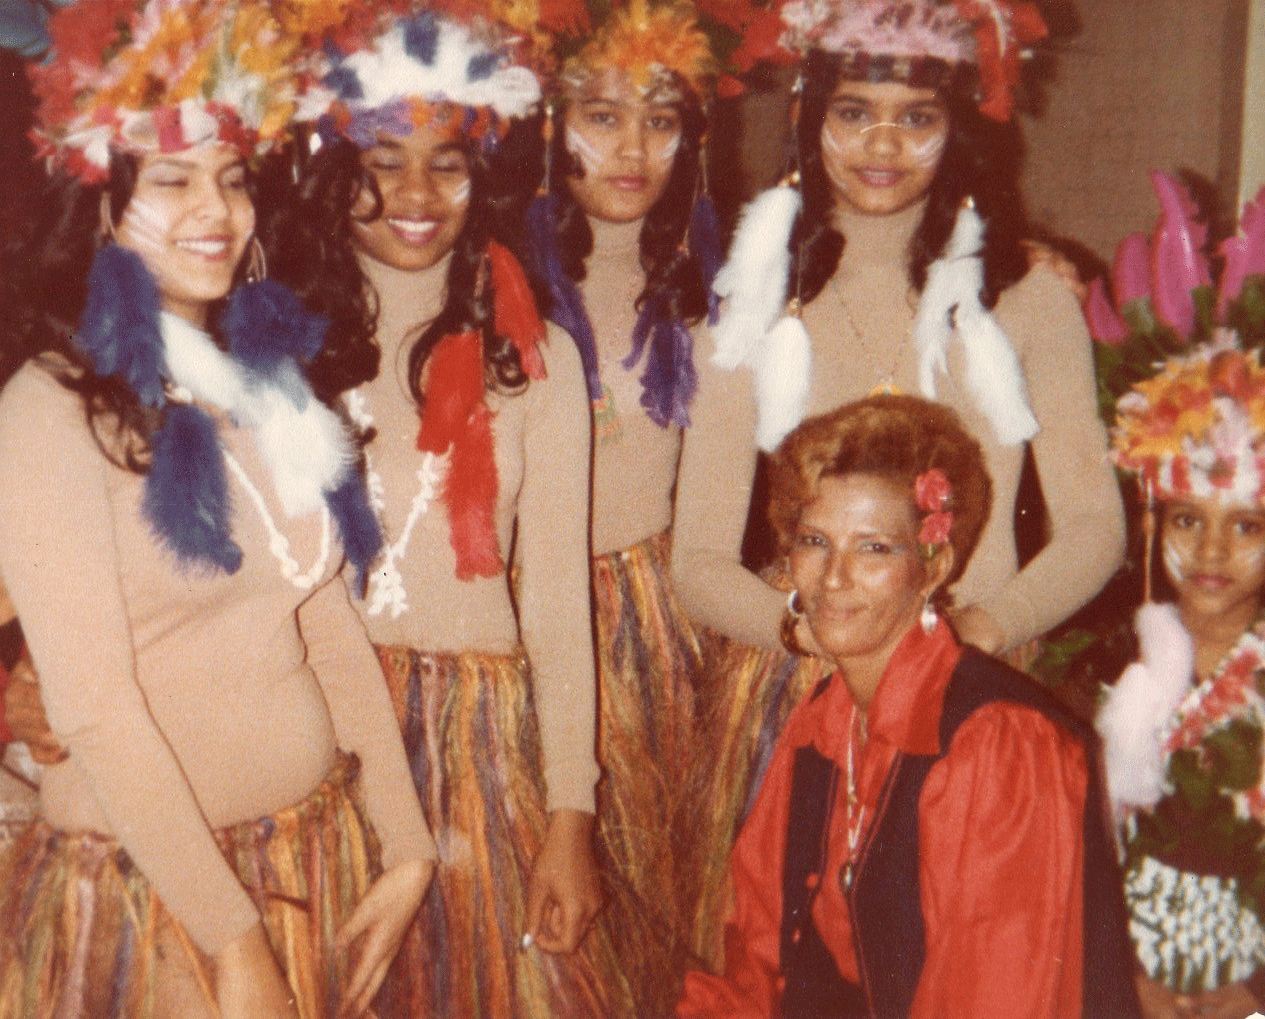 Fefita La Grande participating at a Centro Cívico y Cultural Dominicano event, ca. 1980s